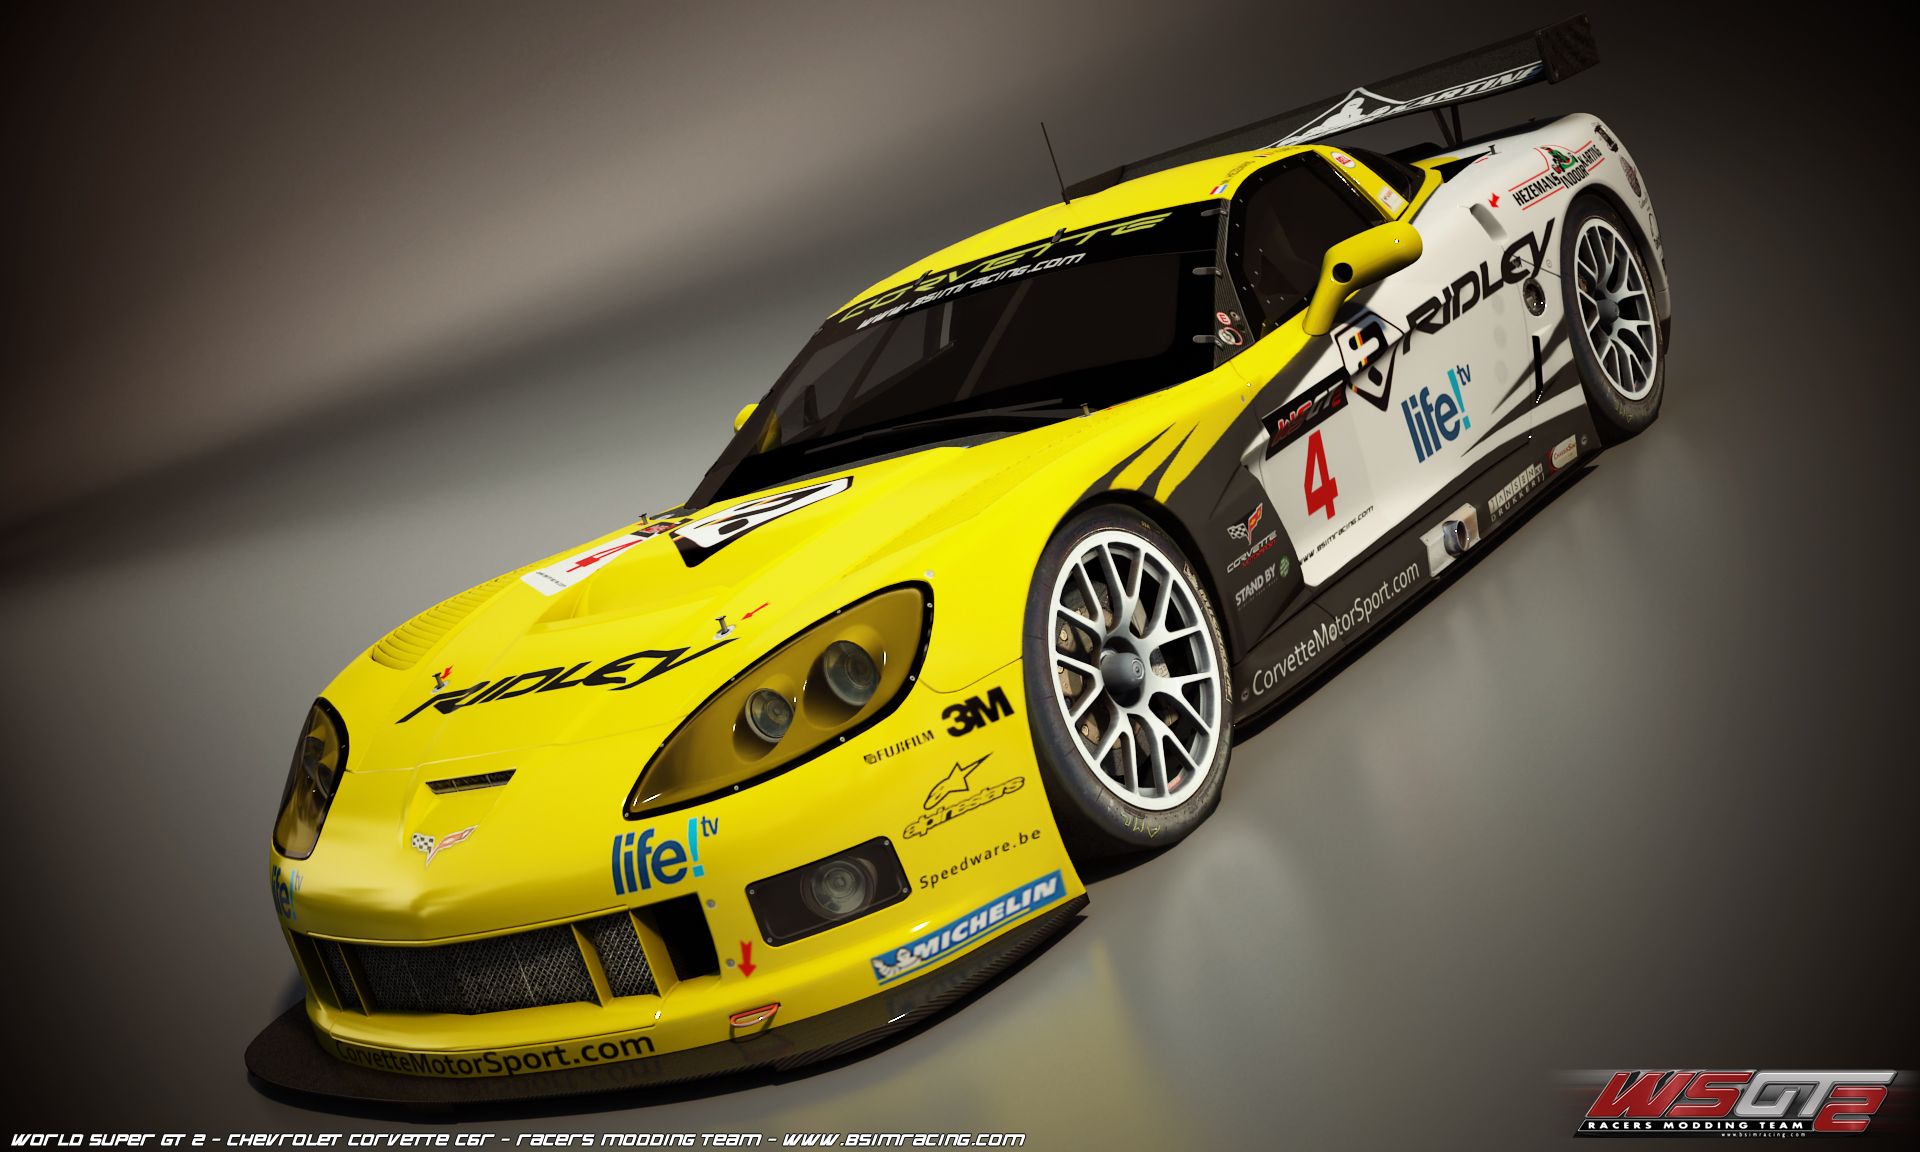 World Super GT 2 - Corvette Wallpapers | VirtualR - Sim Racing News